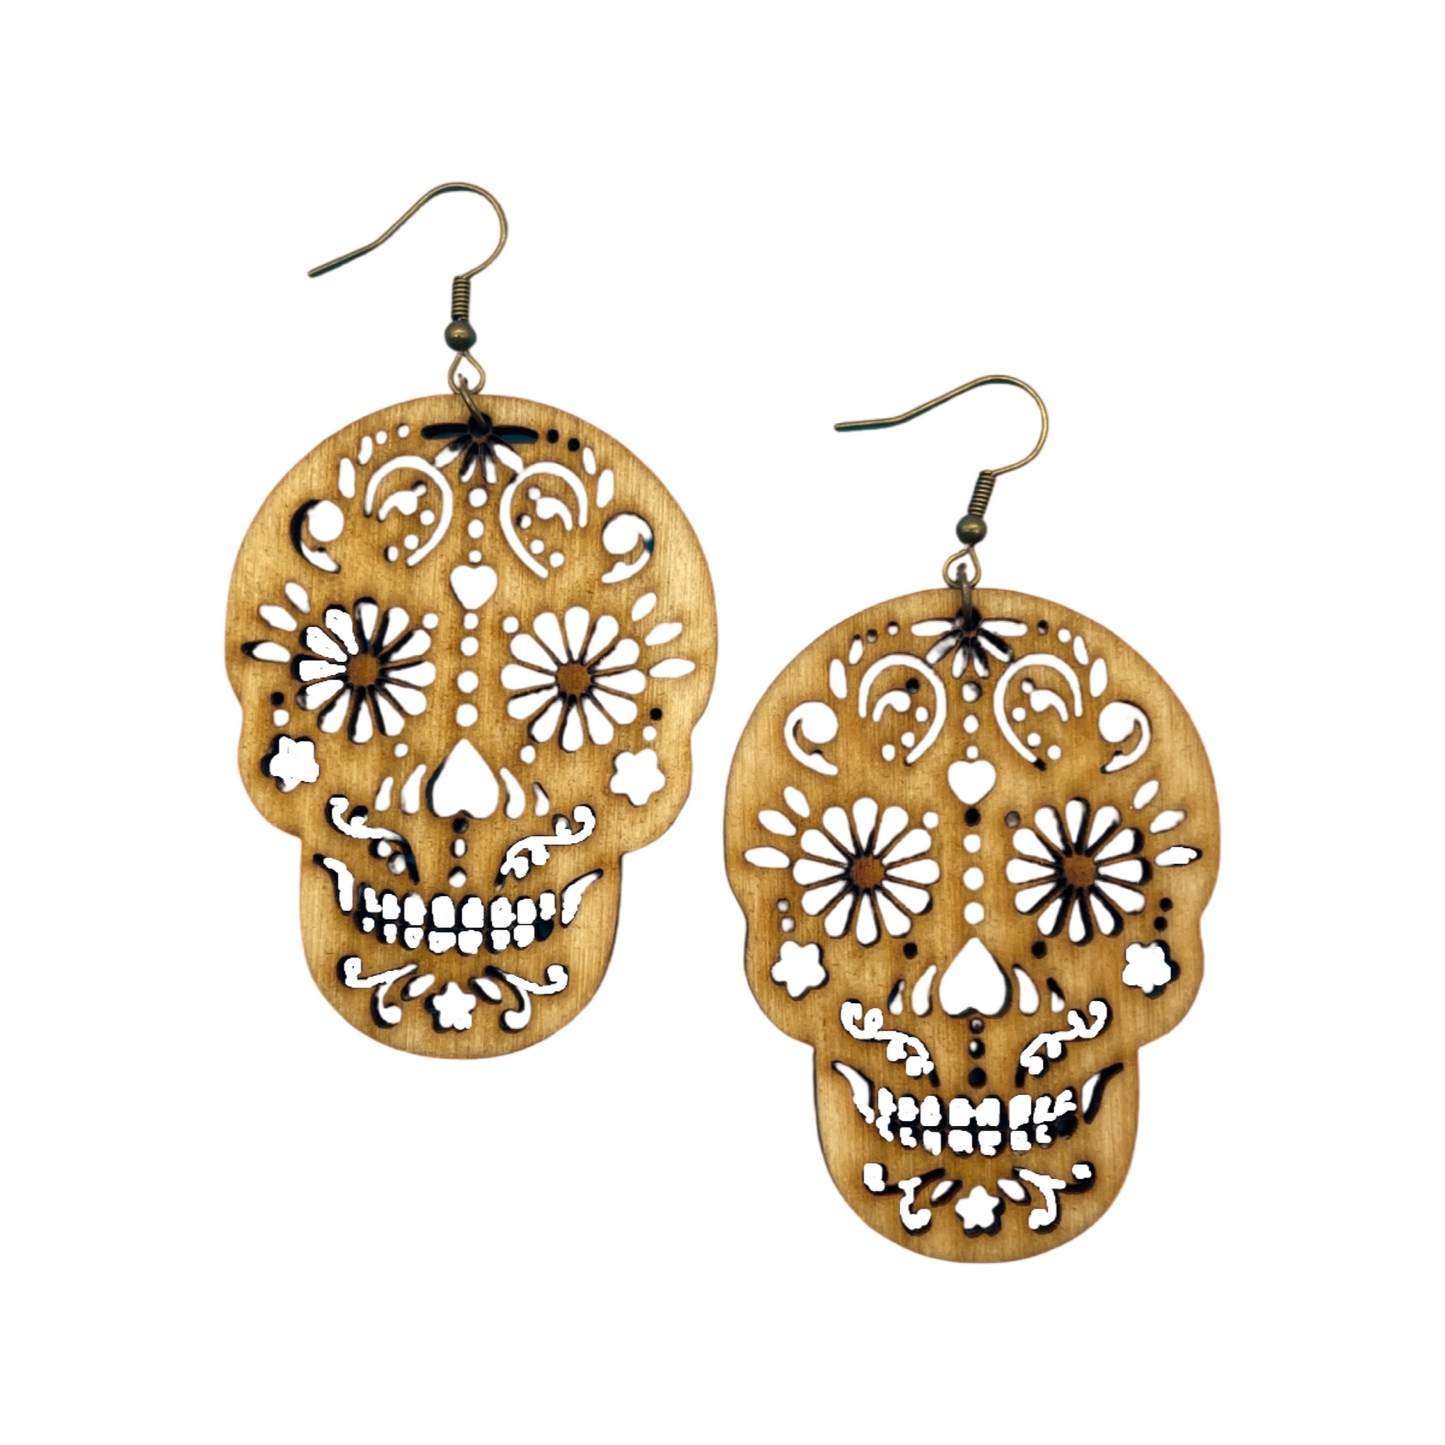 Sugar skull (Dia de los muertos) earrings